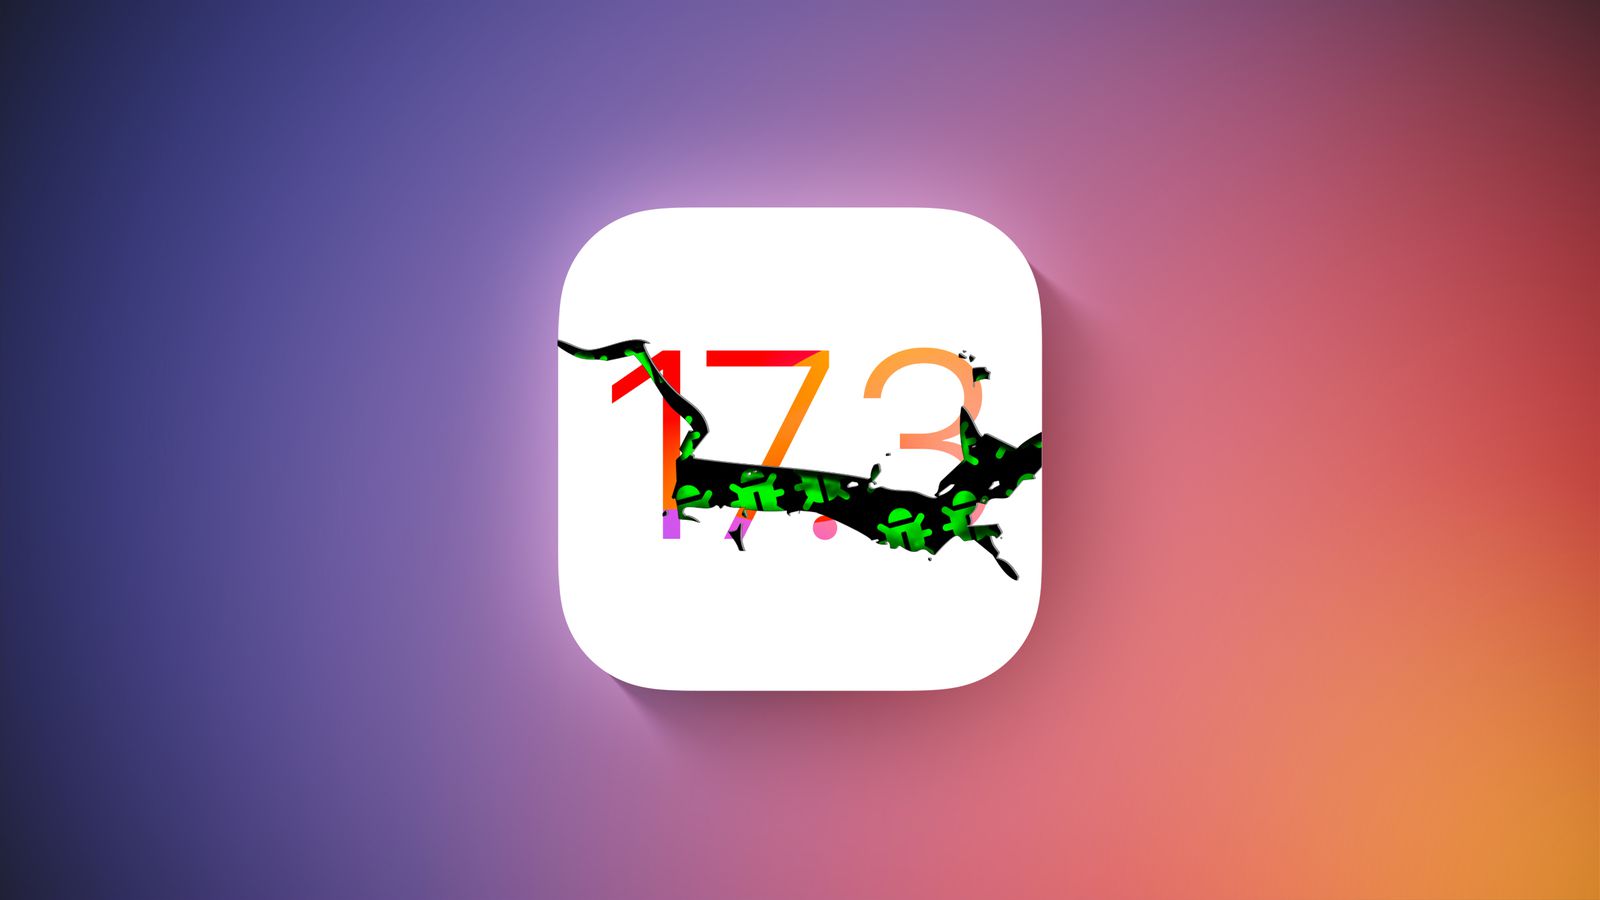 Apple випустила iOS 17.3 Beta 2, але через кілька годин відкликала оновлення через серйозну помилку